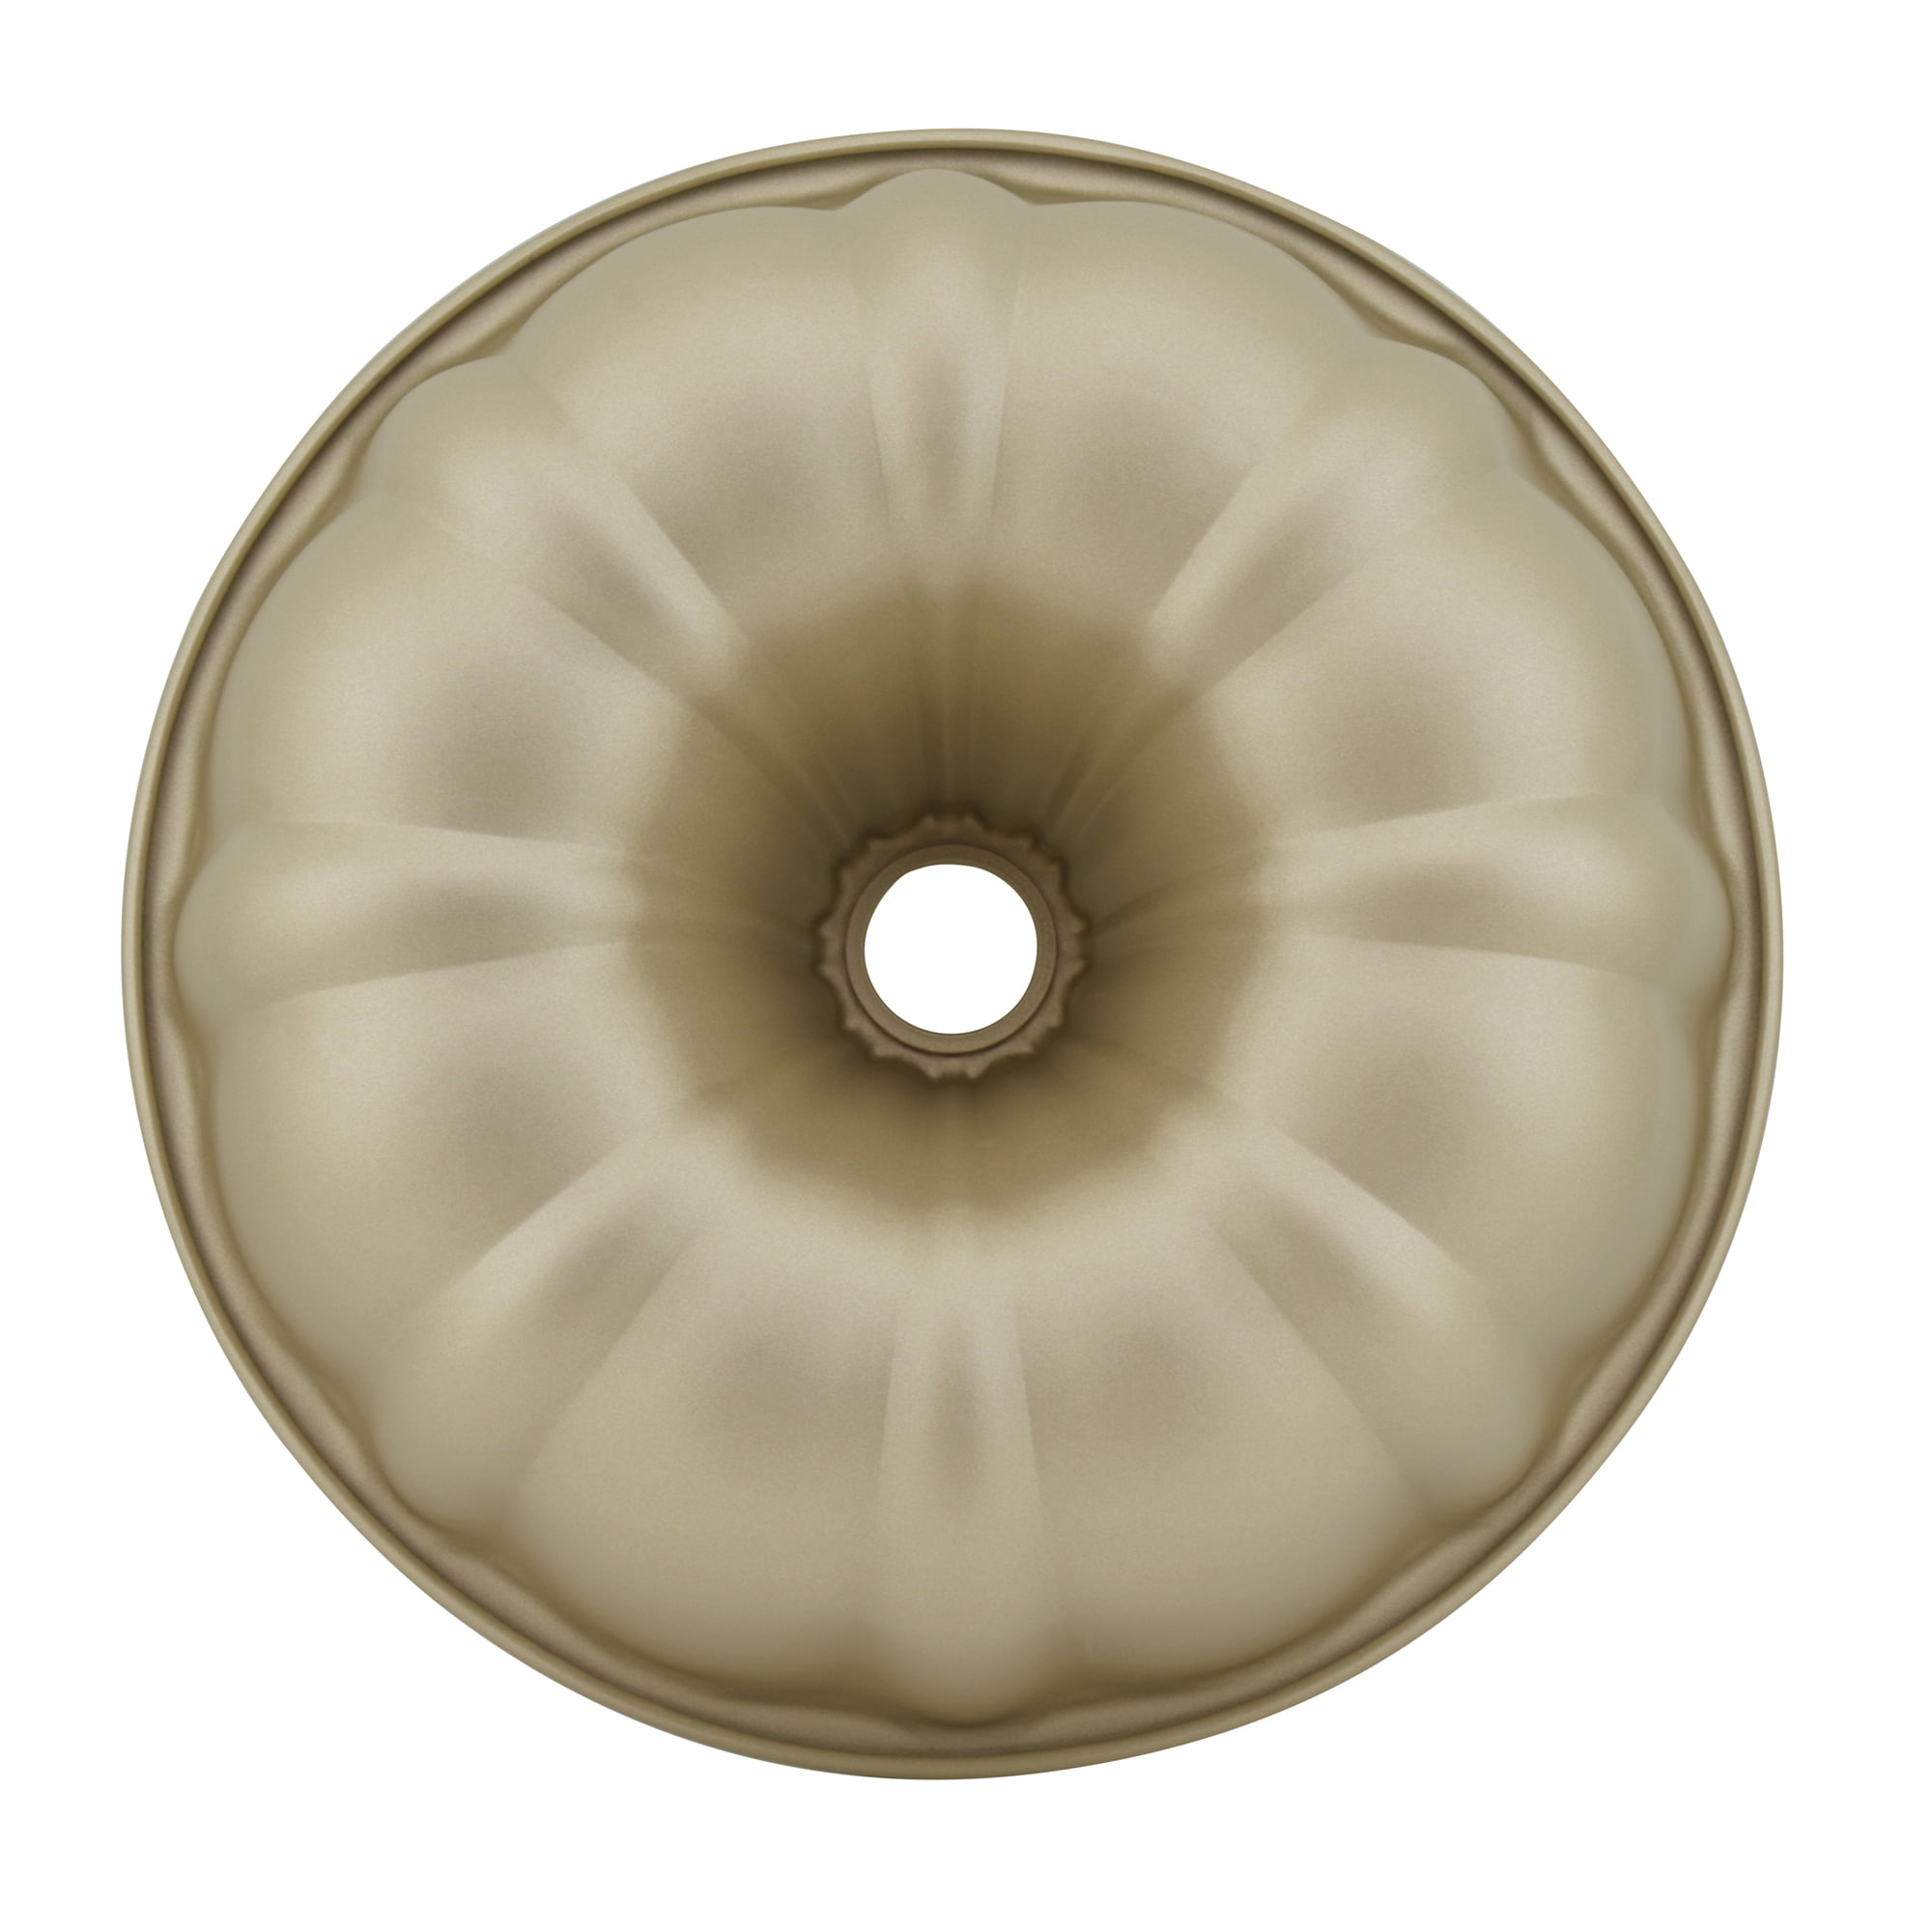 Seenda 9-Inch Non-Stick Fluted Bundt Cake Pan Round